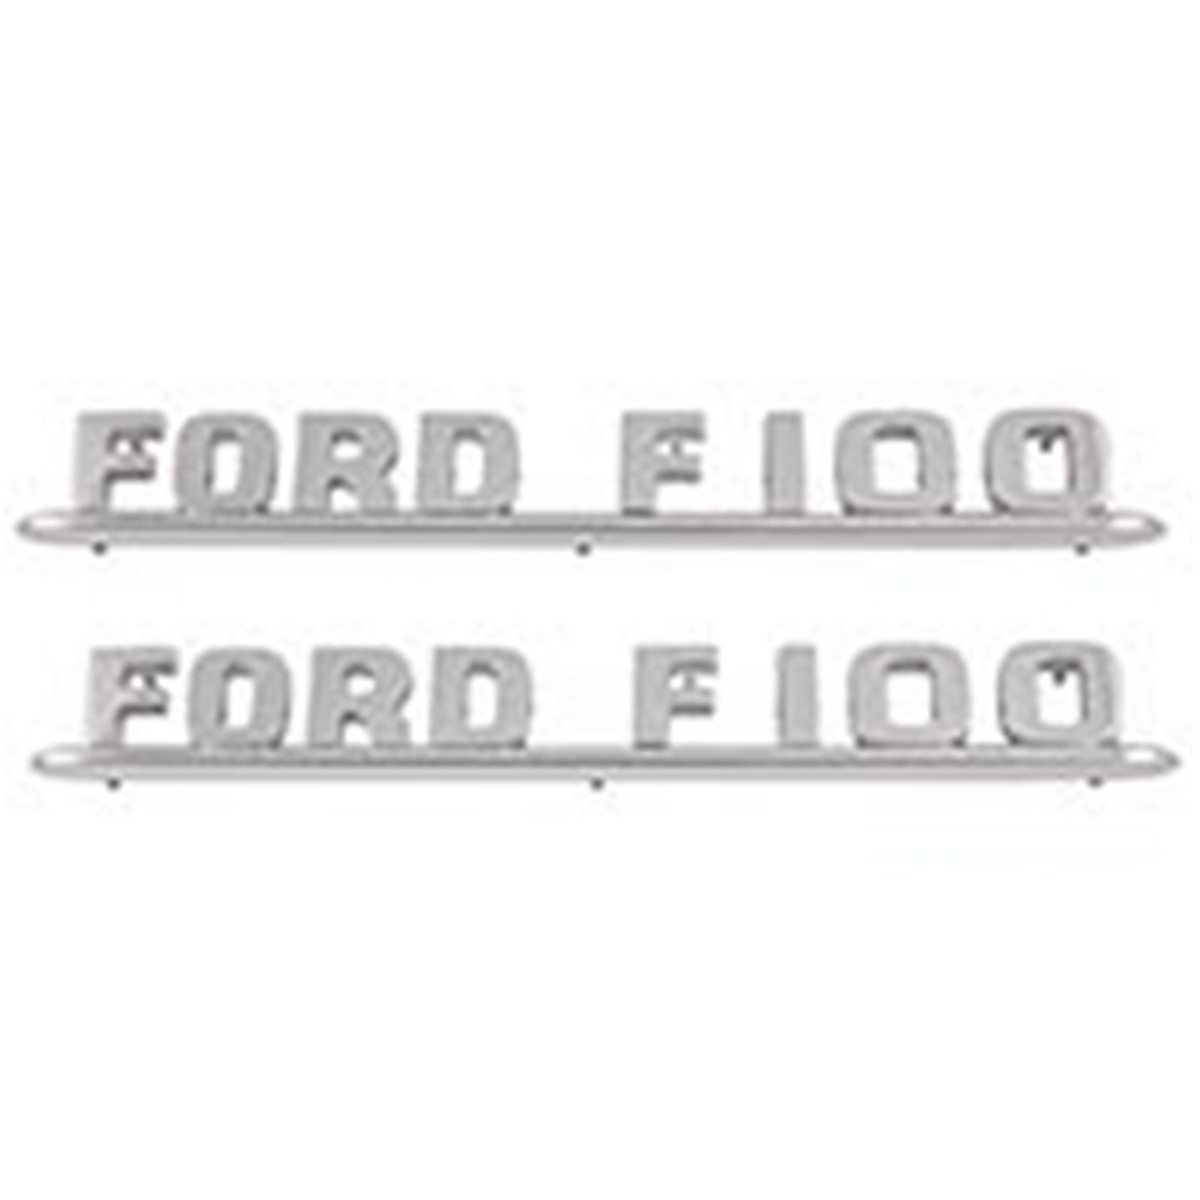 Bonnet/Hood Emblems - Ford F100 - 1953-54 com